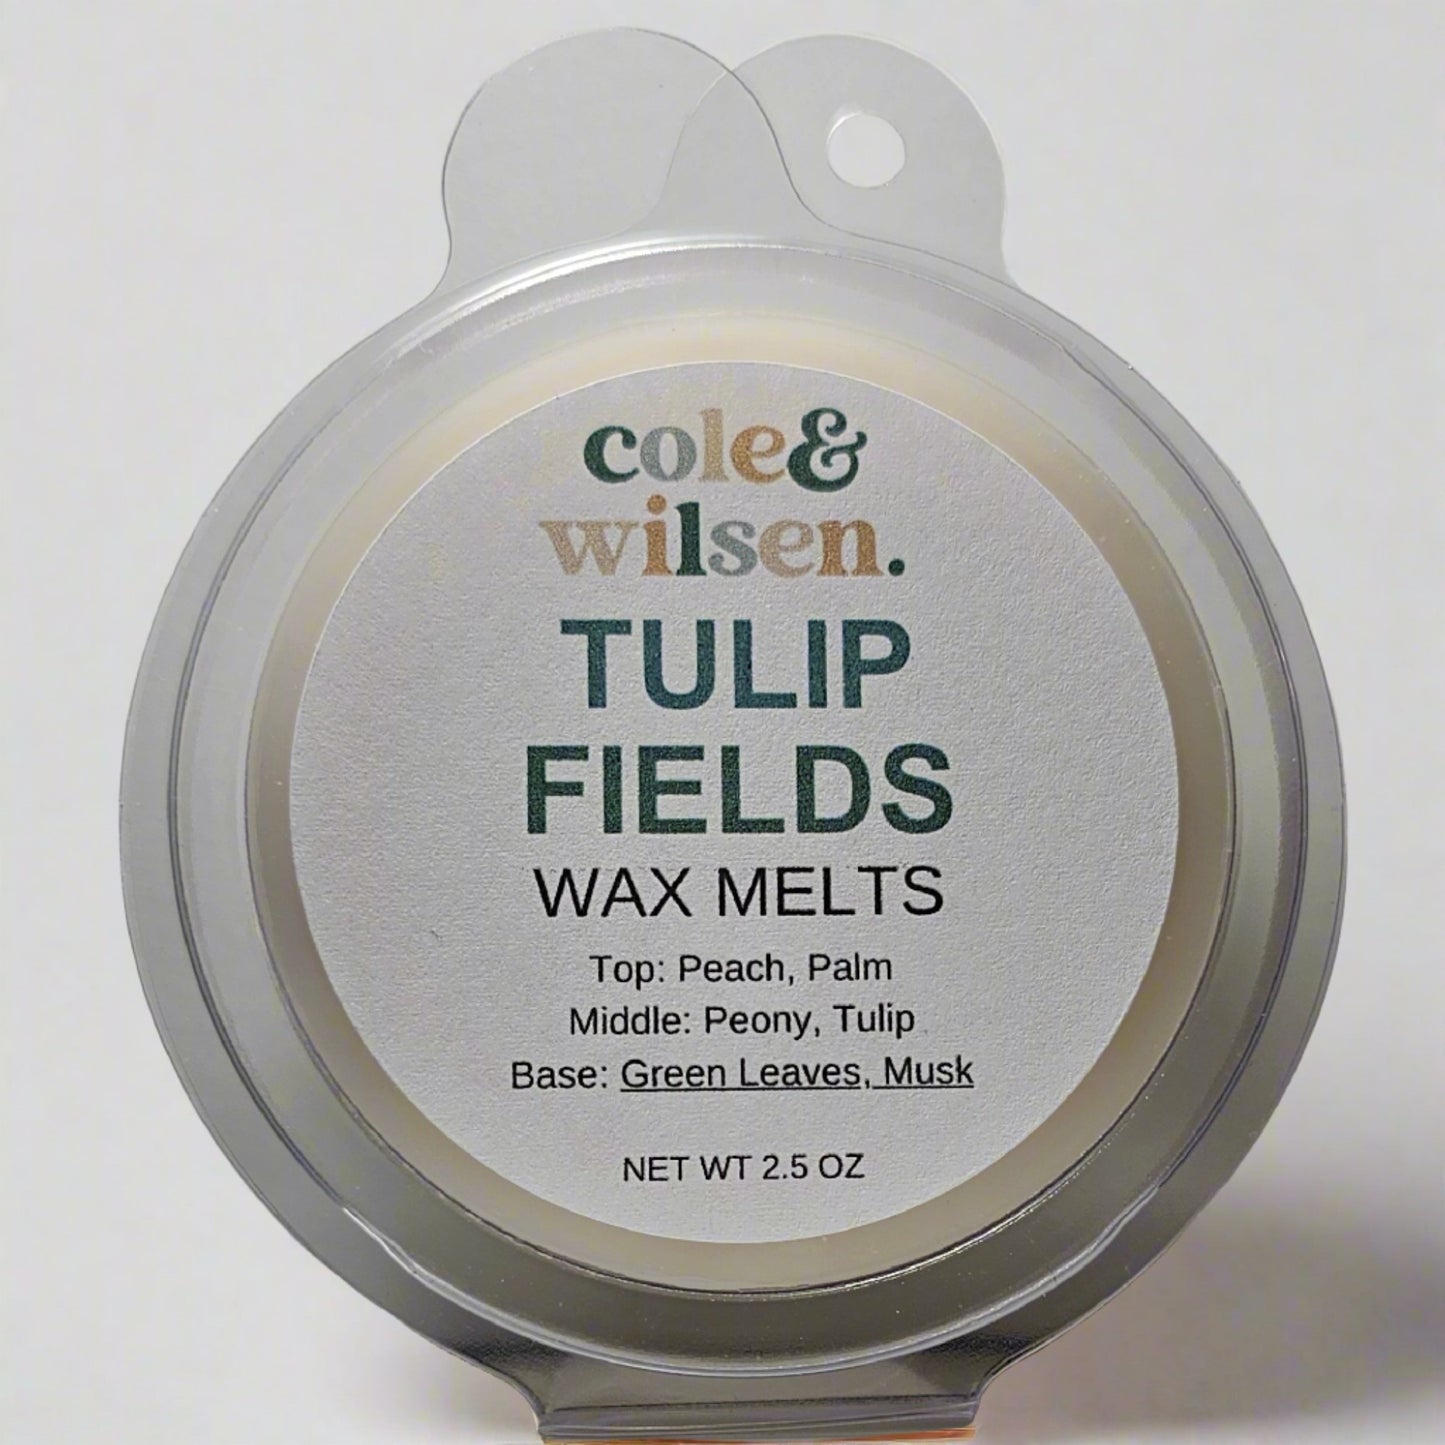 Tulip Fields Wax Melts